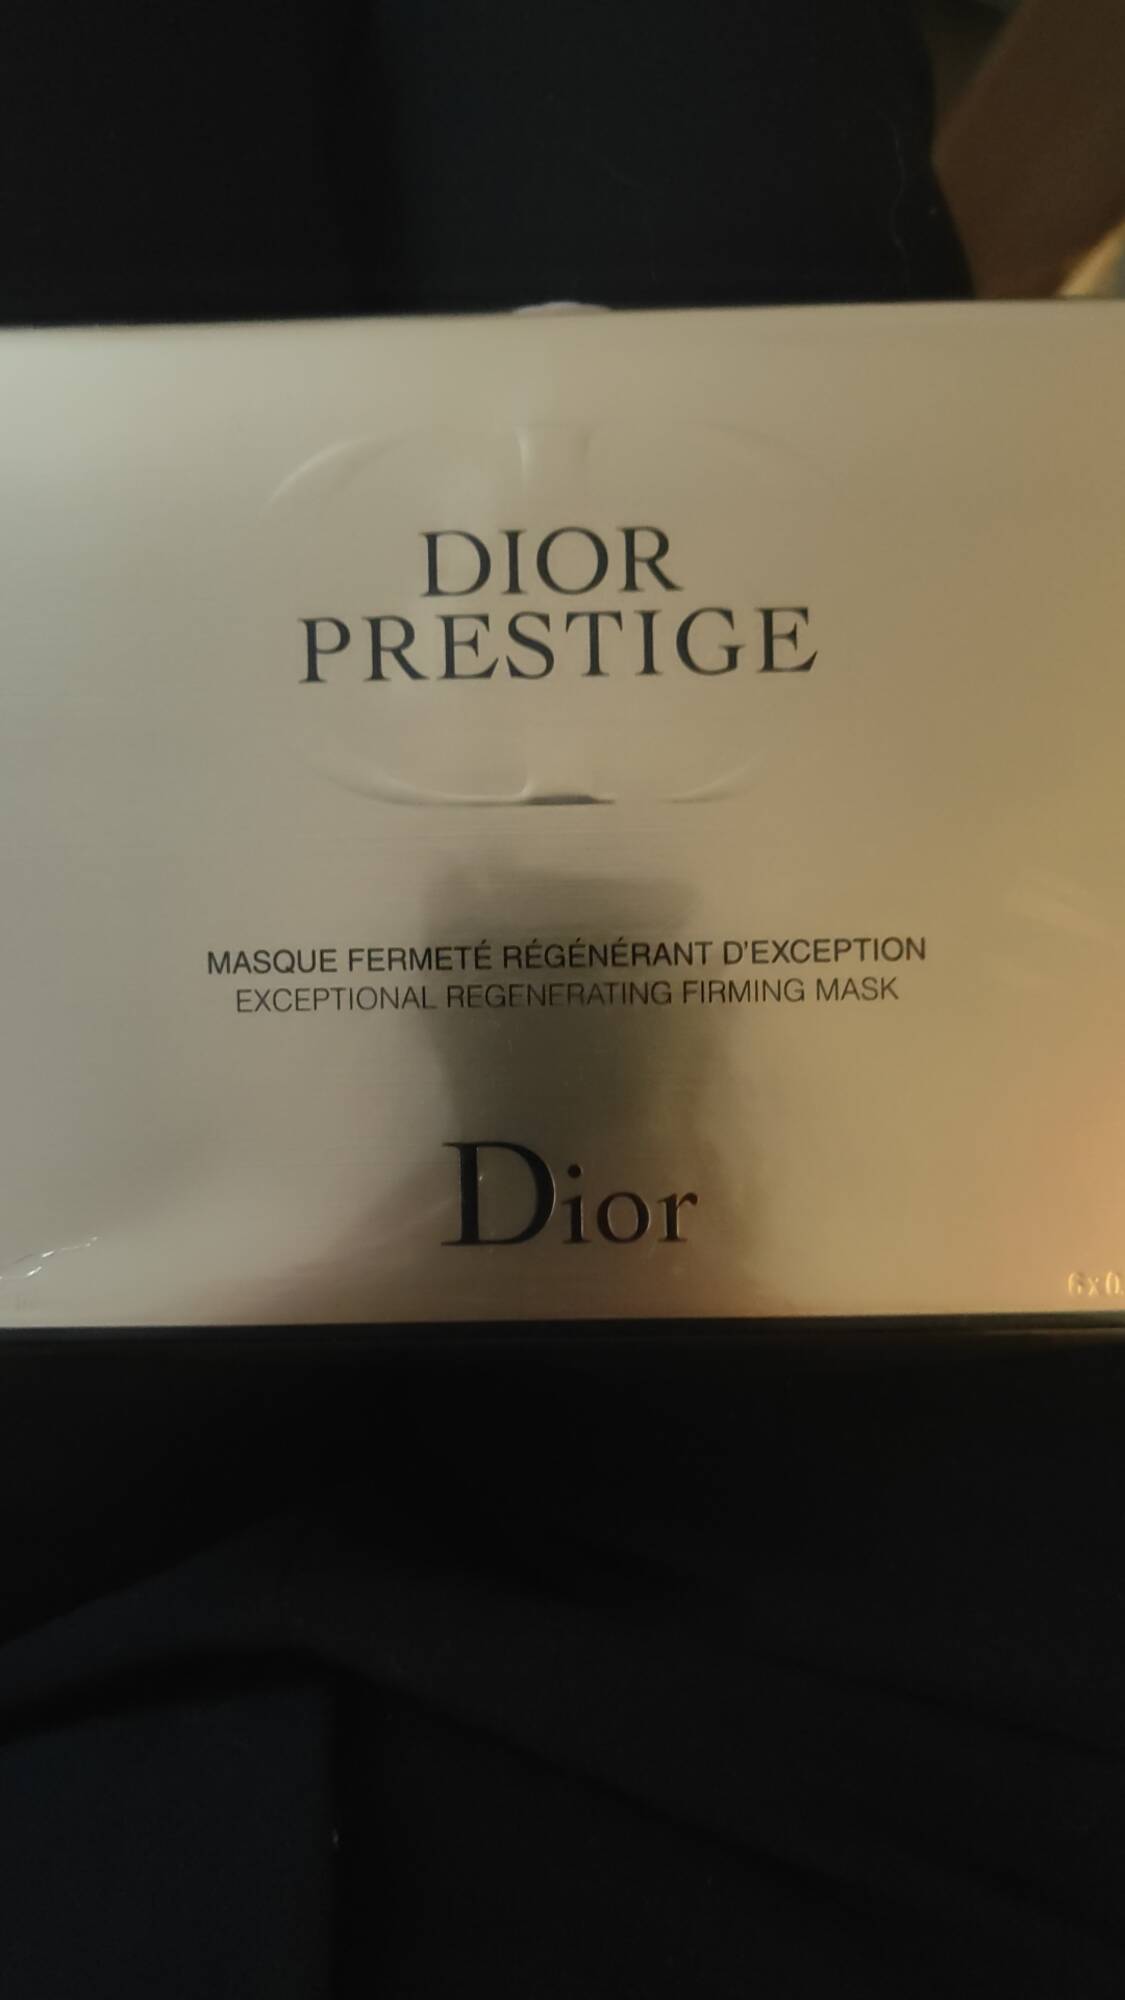 DIOR - Dior prestige - Masque fermeté régénérant d'exception